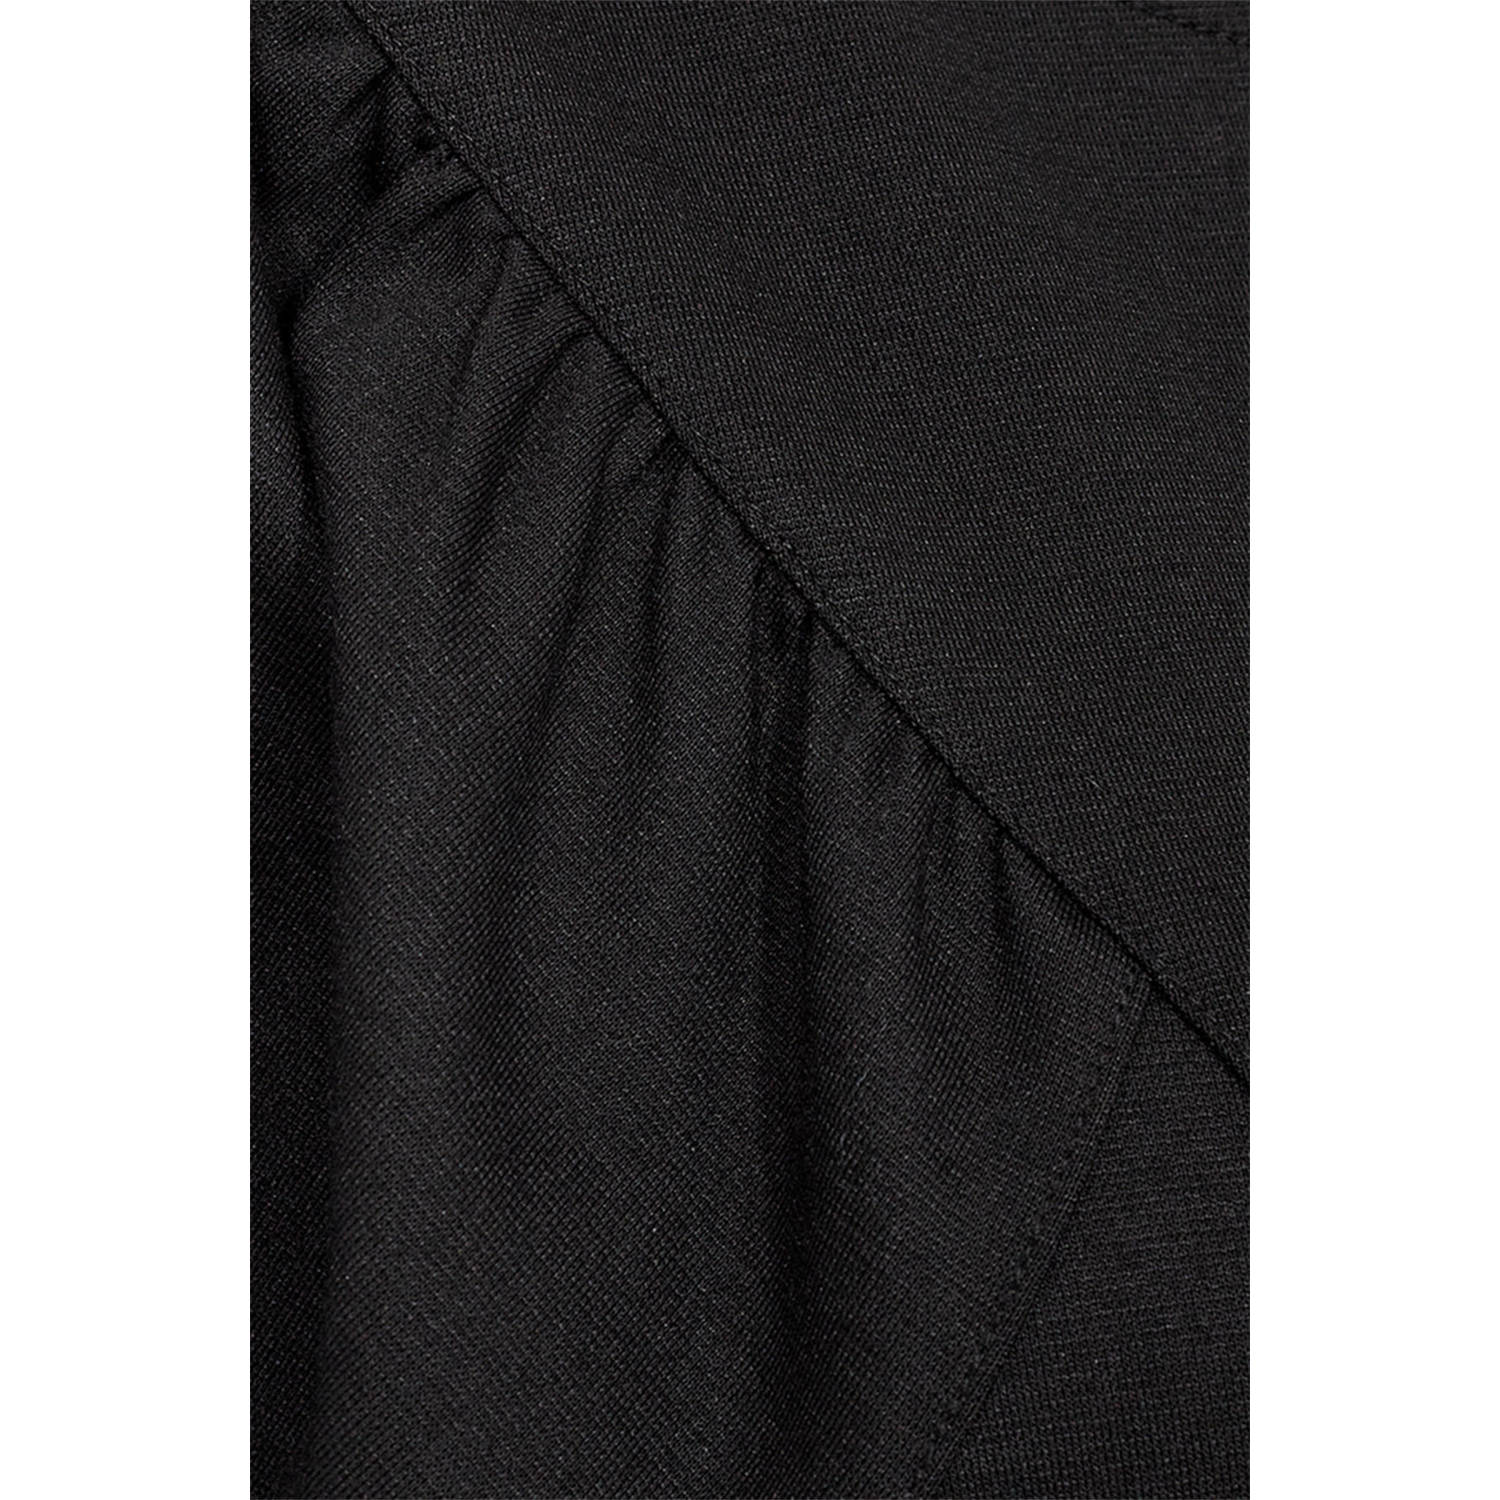 FREEQUENT A-lijn jurk FQNANNI-DRESS zwart